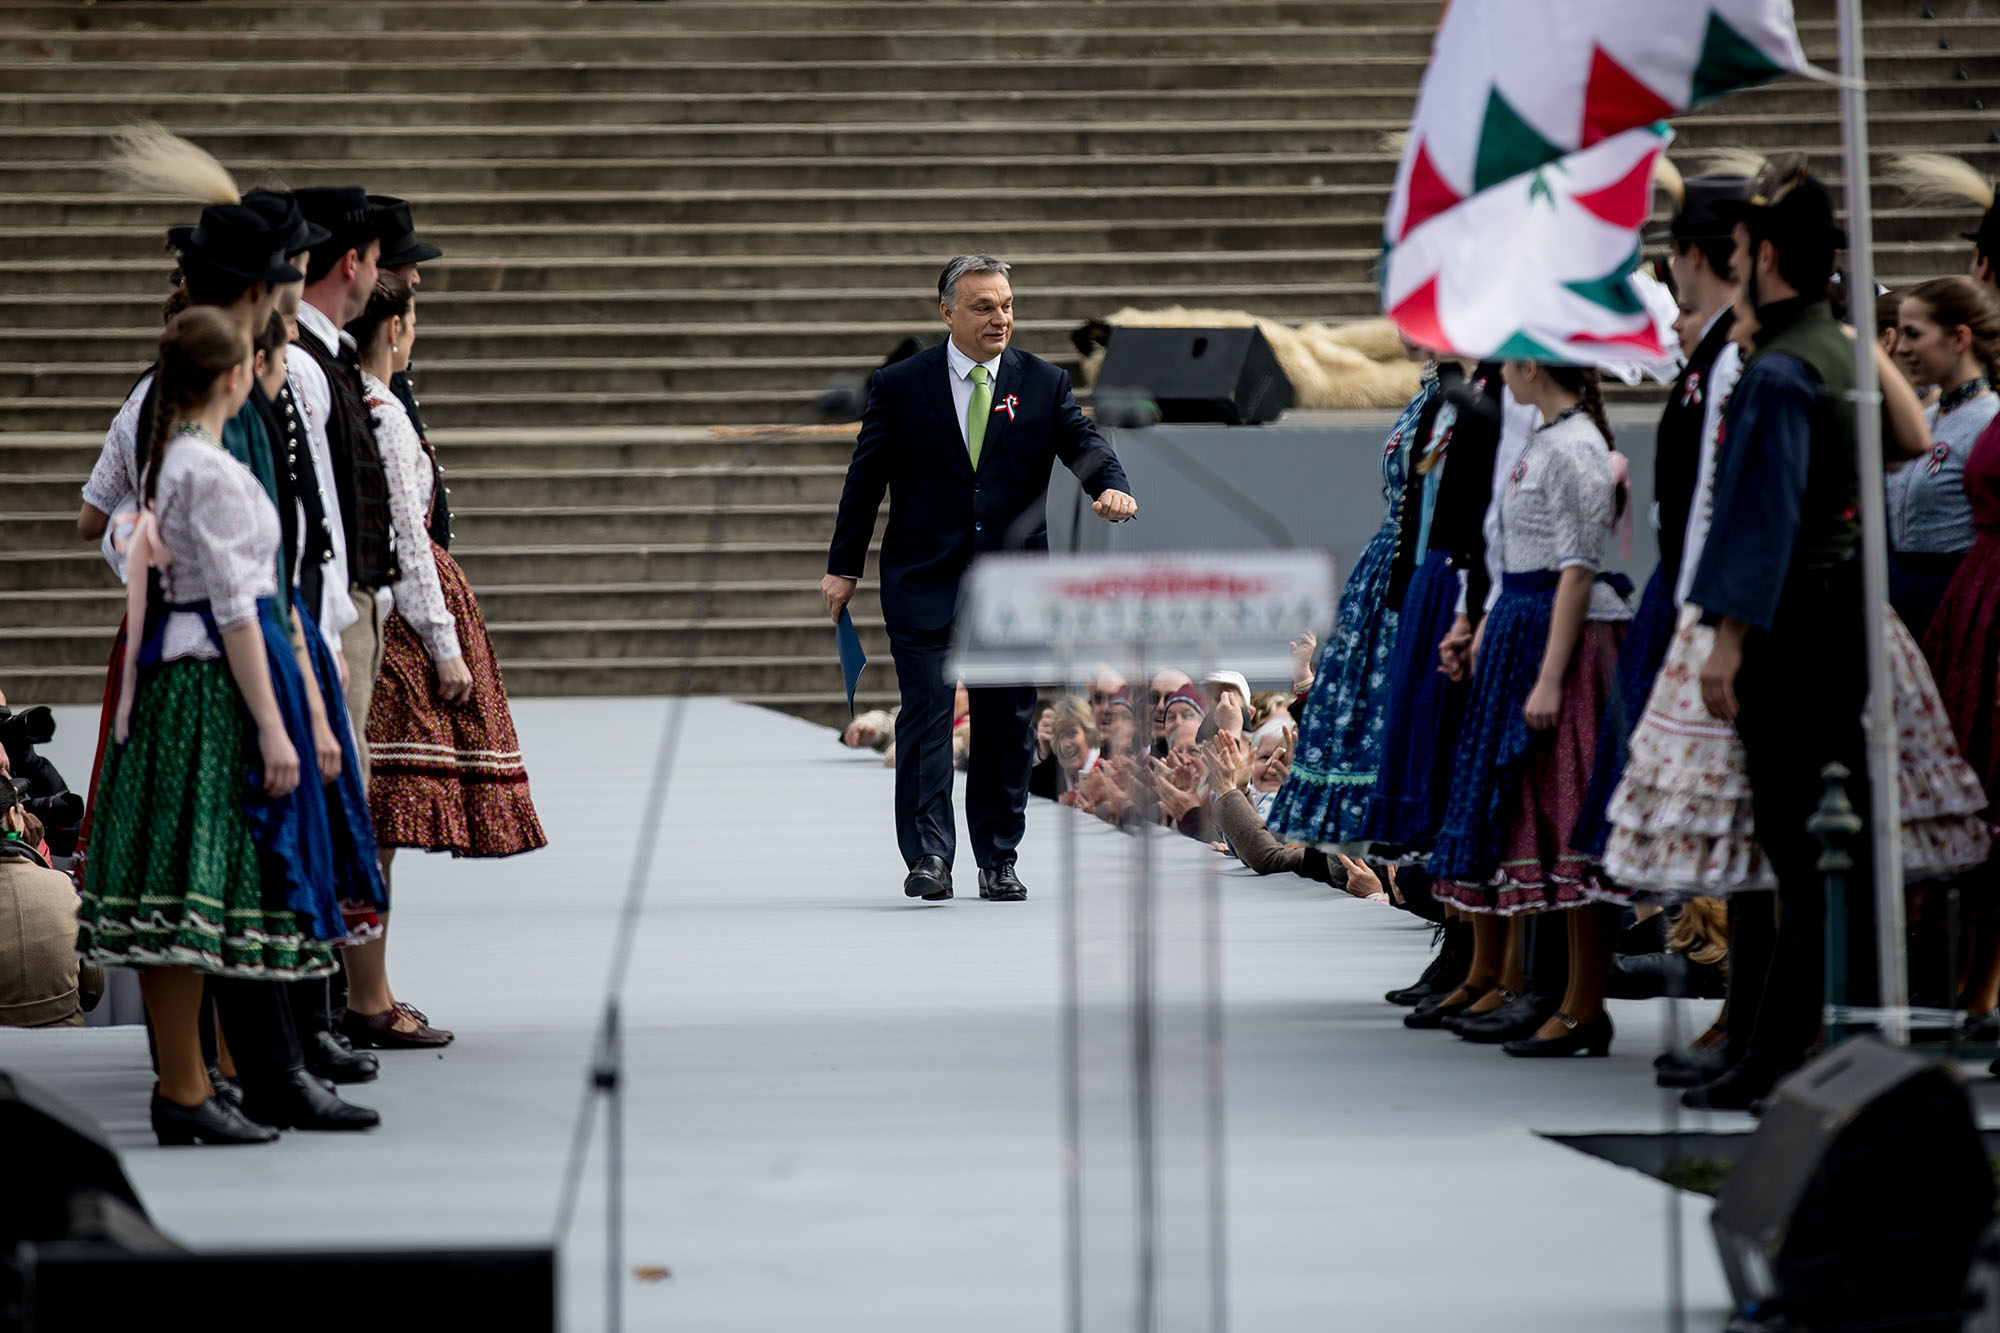 Ma sokan otthon hagyták az eszüket: Orbán bakizott, a Jobbik csokizott, Majtényi beverte a fejét 1